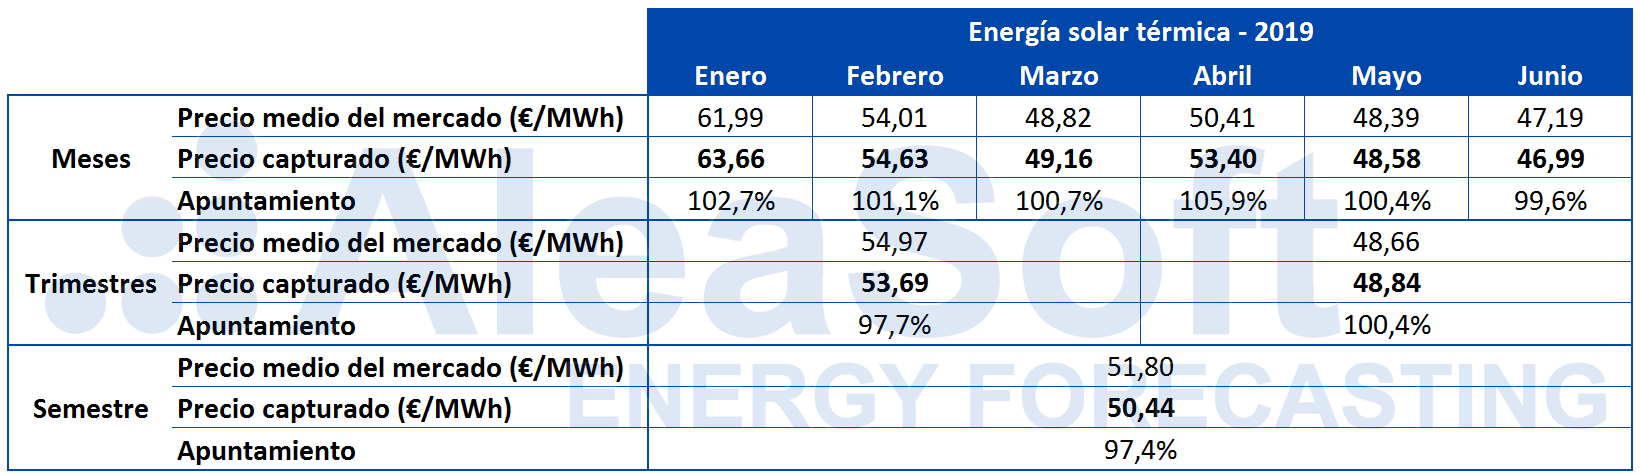 AleaSoft - Tabla precio capturado solar termica España